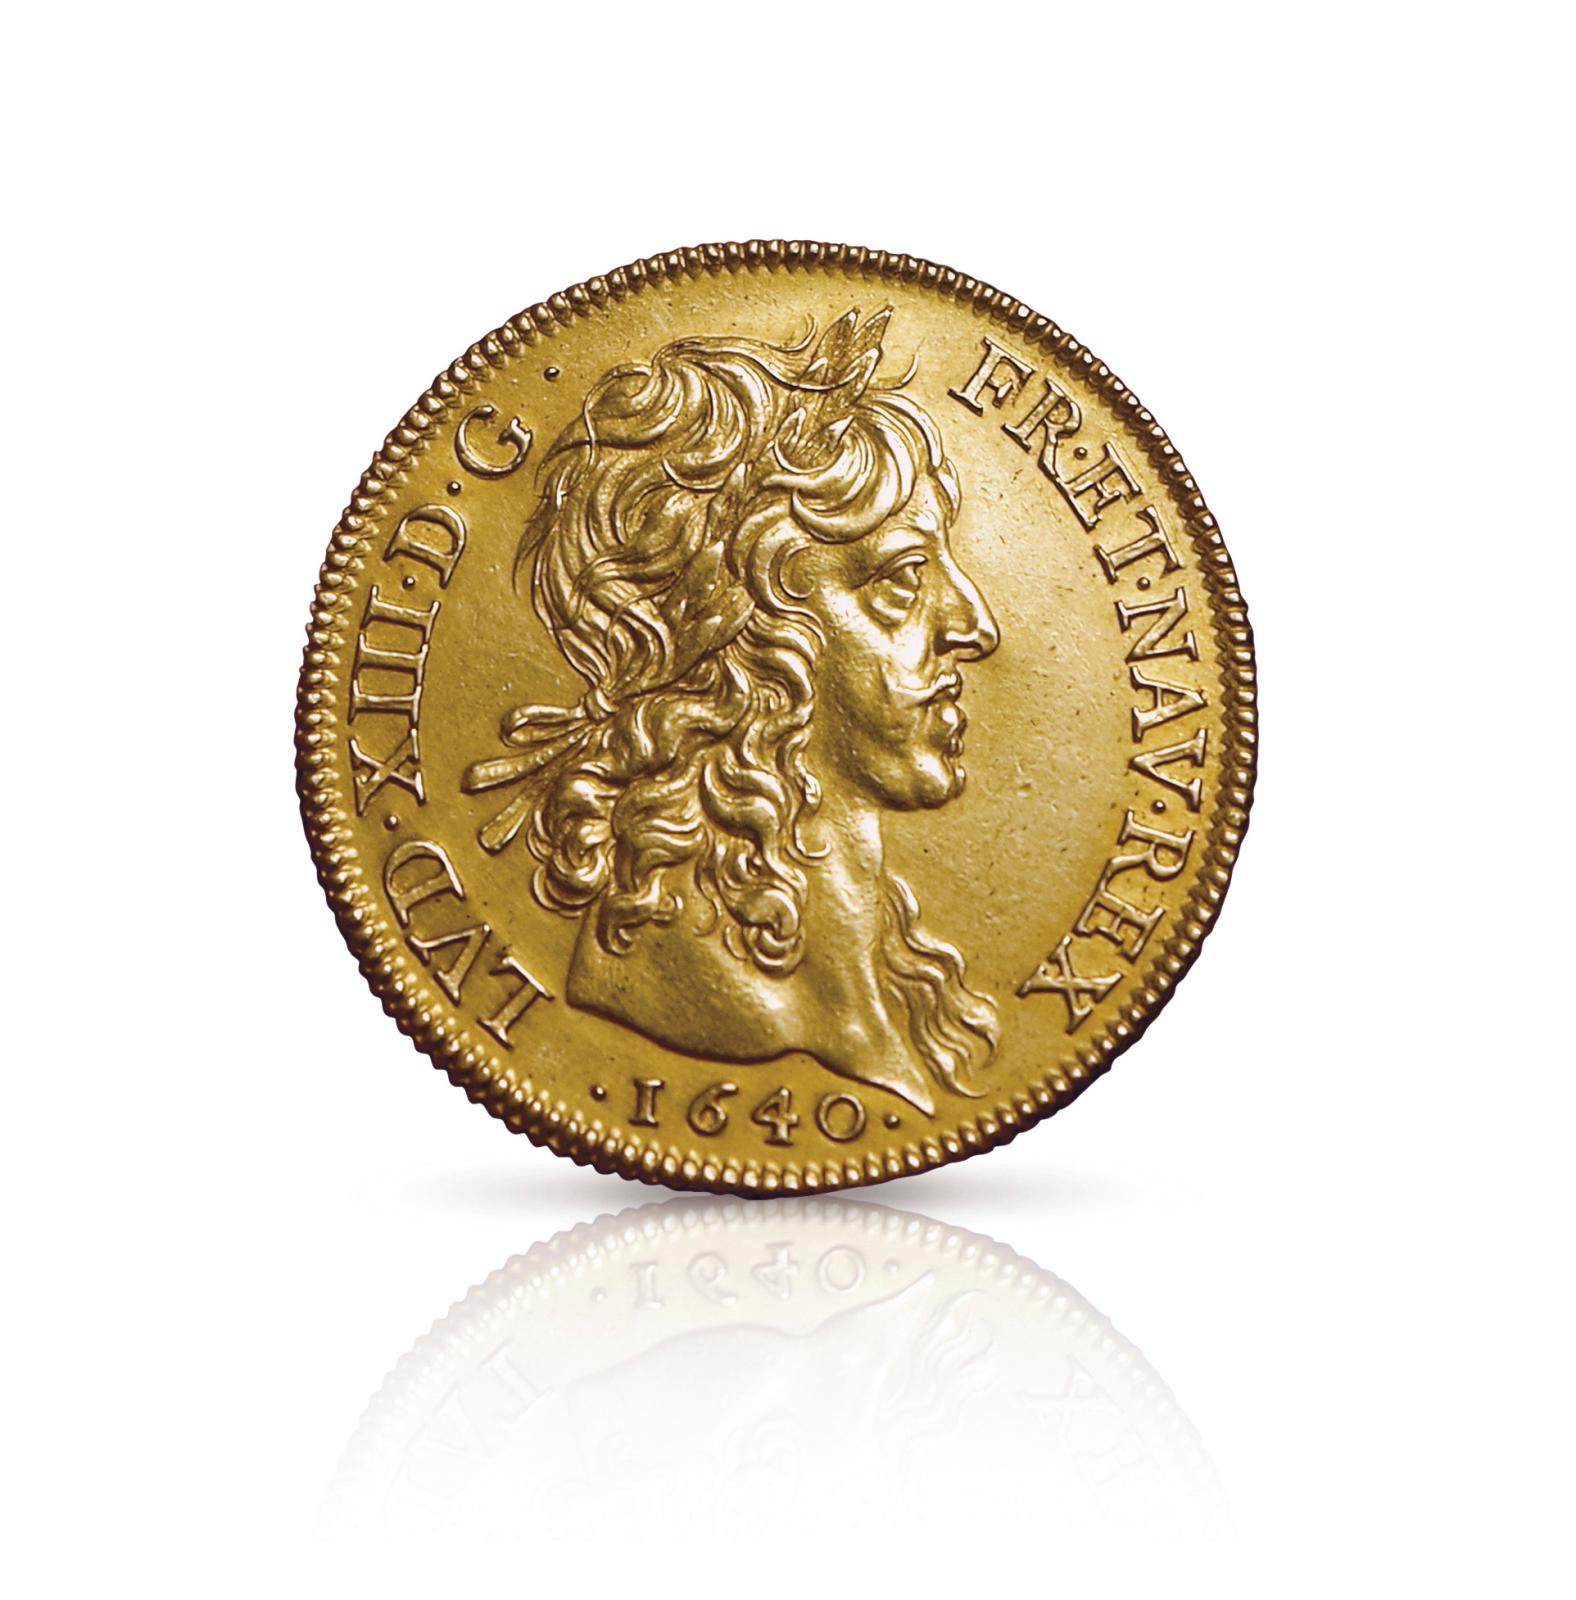  Triumph for a Rare Louis XIII Coin